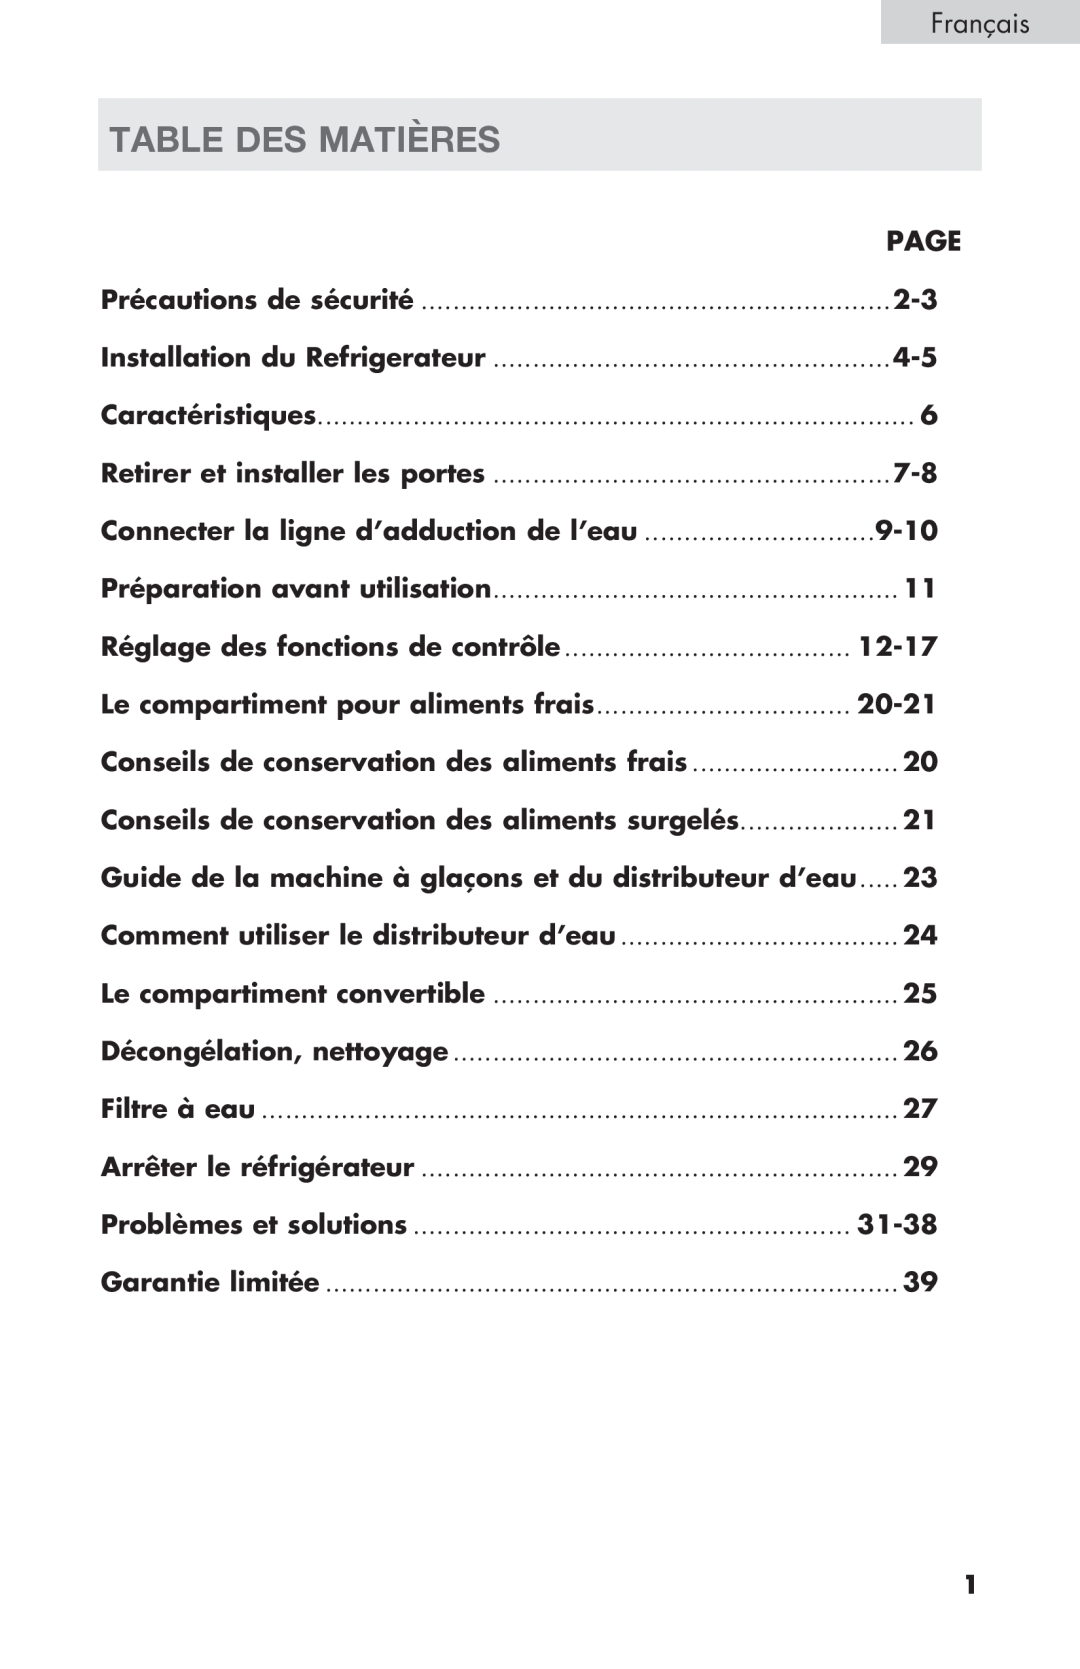 Haier PRFS25 Table Des Matières, Français, Réglage des fonctions de contrôle, Le compartiment pour aliments frais, 20-21 